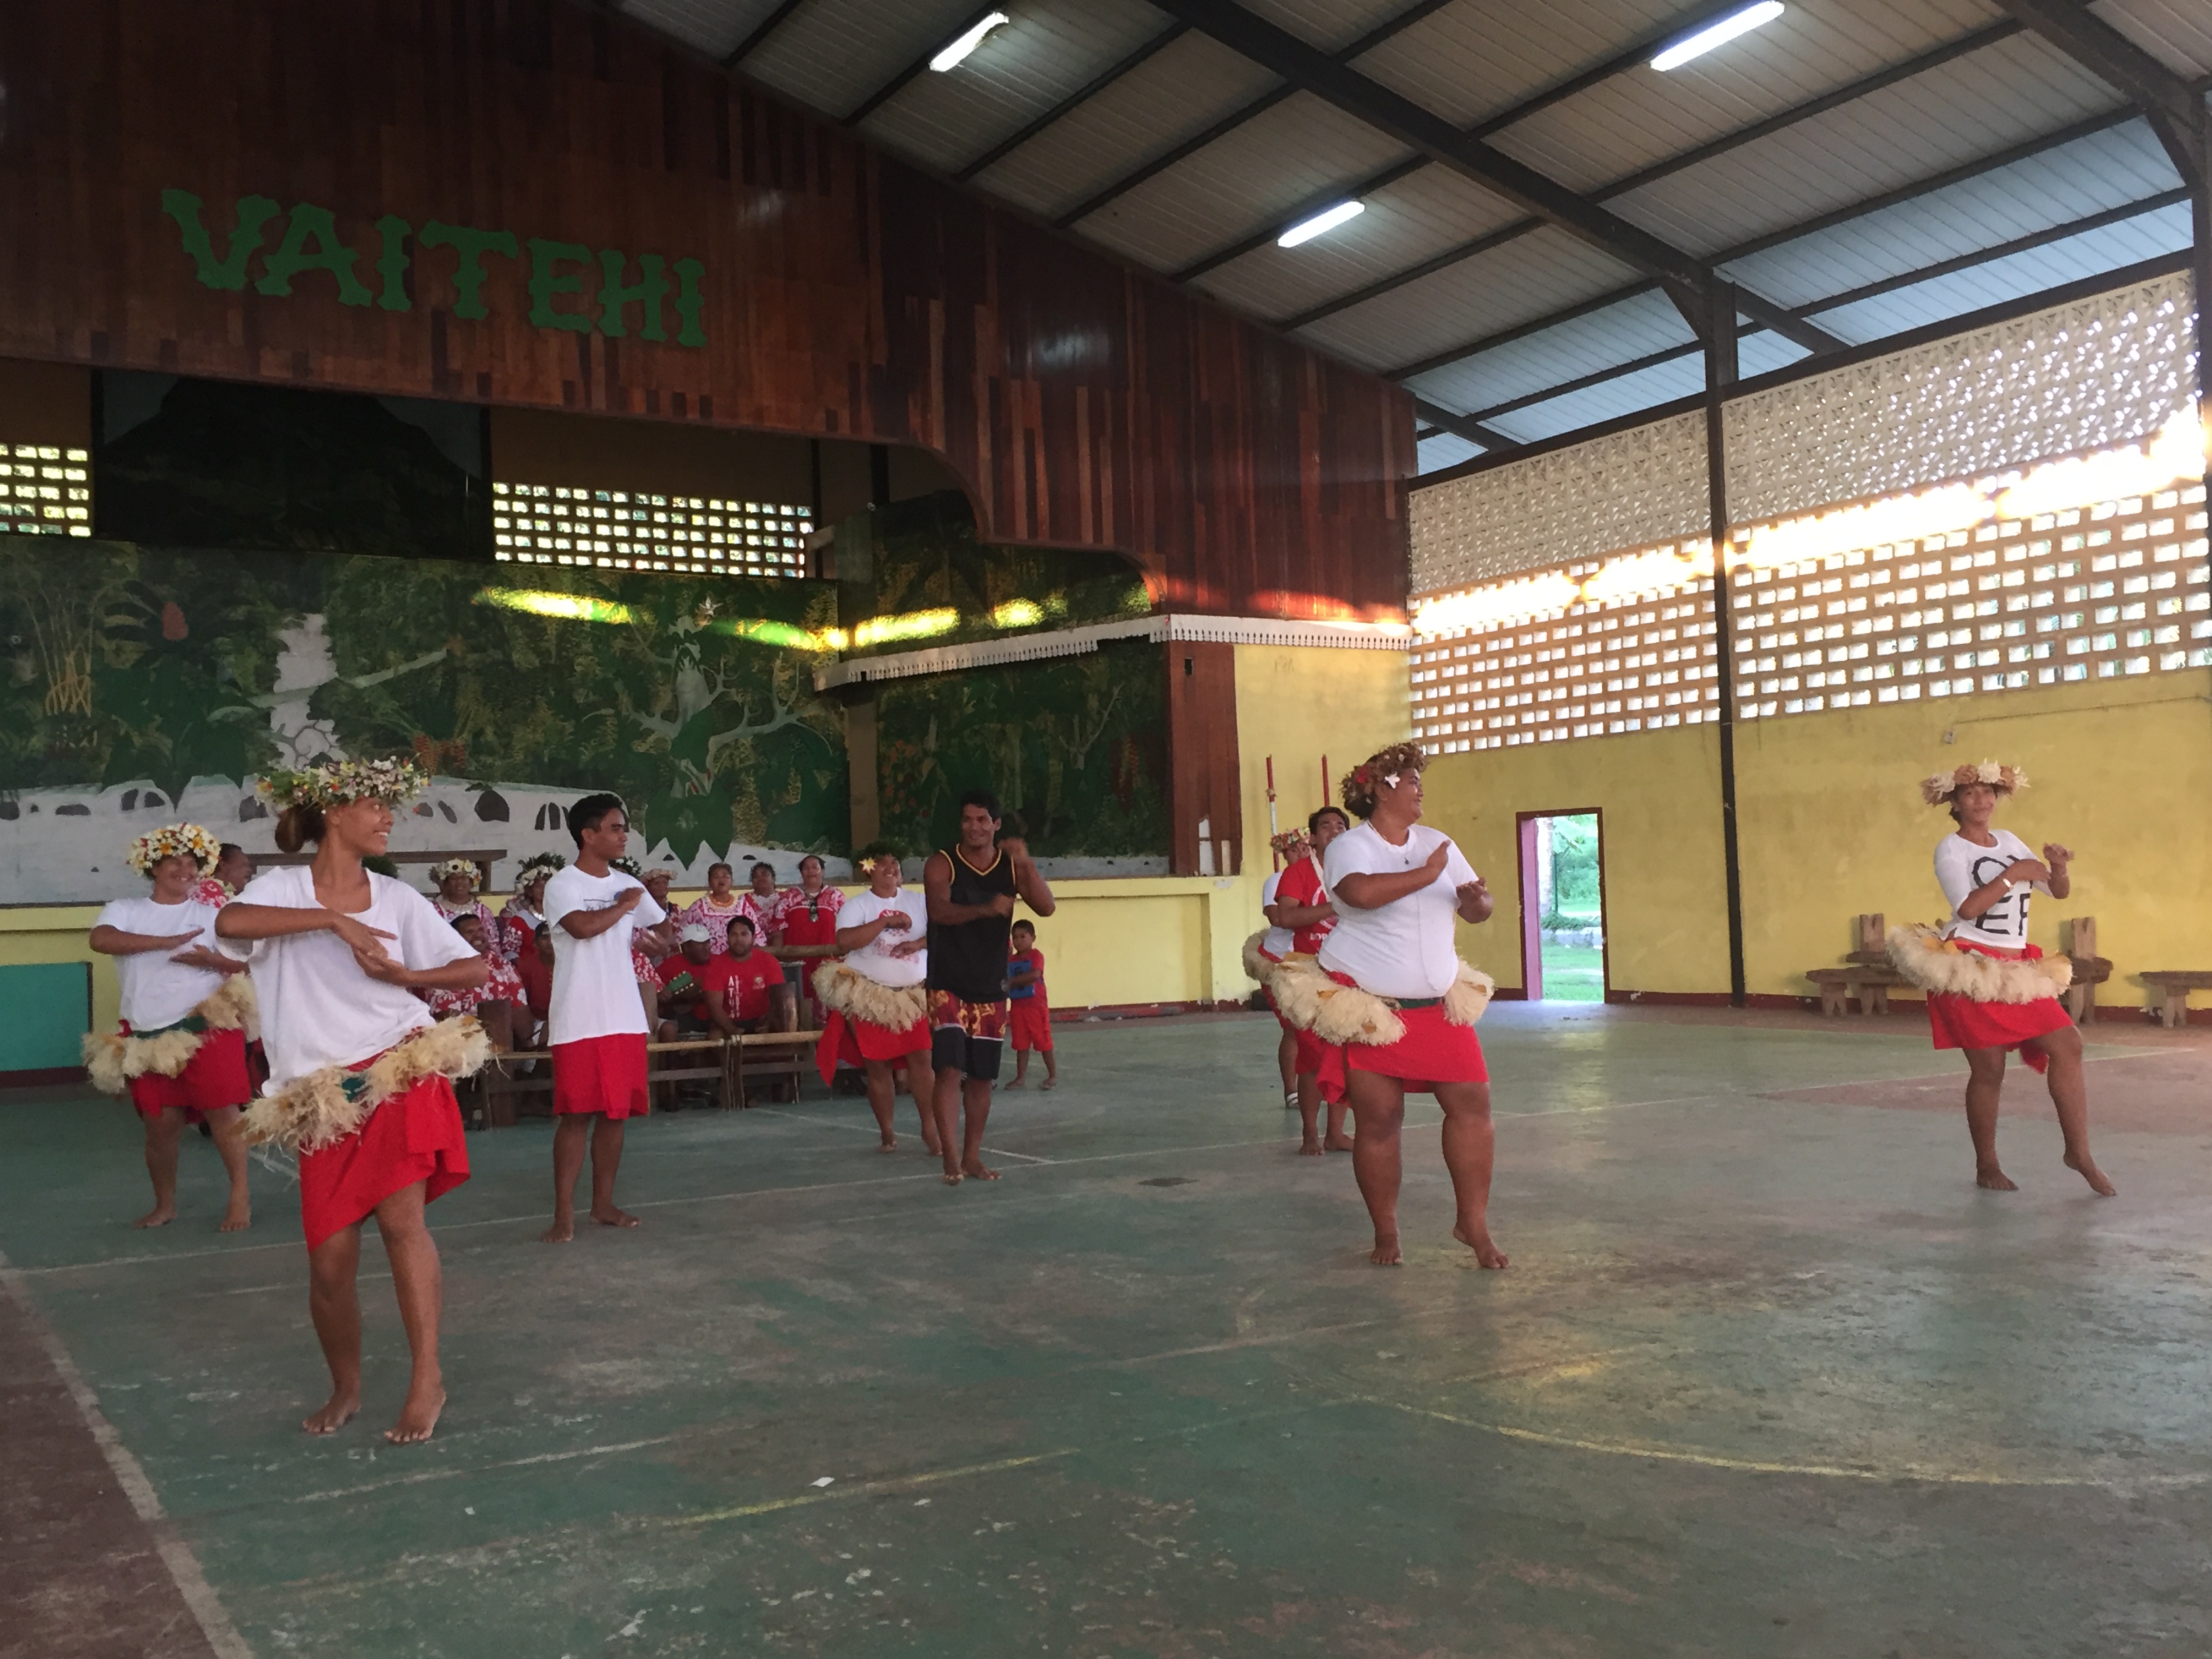 Le groupe a organisé sa répétition générale à Vaitehi avant de se produire à Aitutaki la semaine prochaine. Crédit : Commune de Bora Bora.